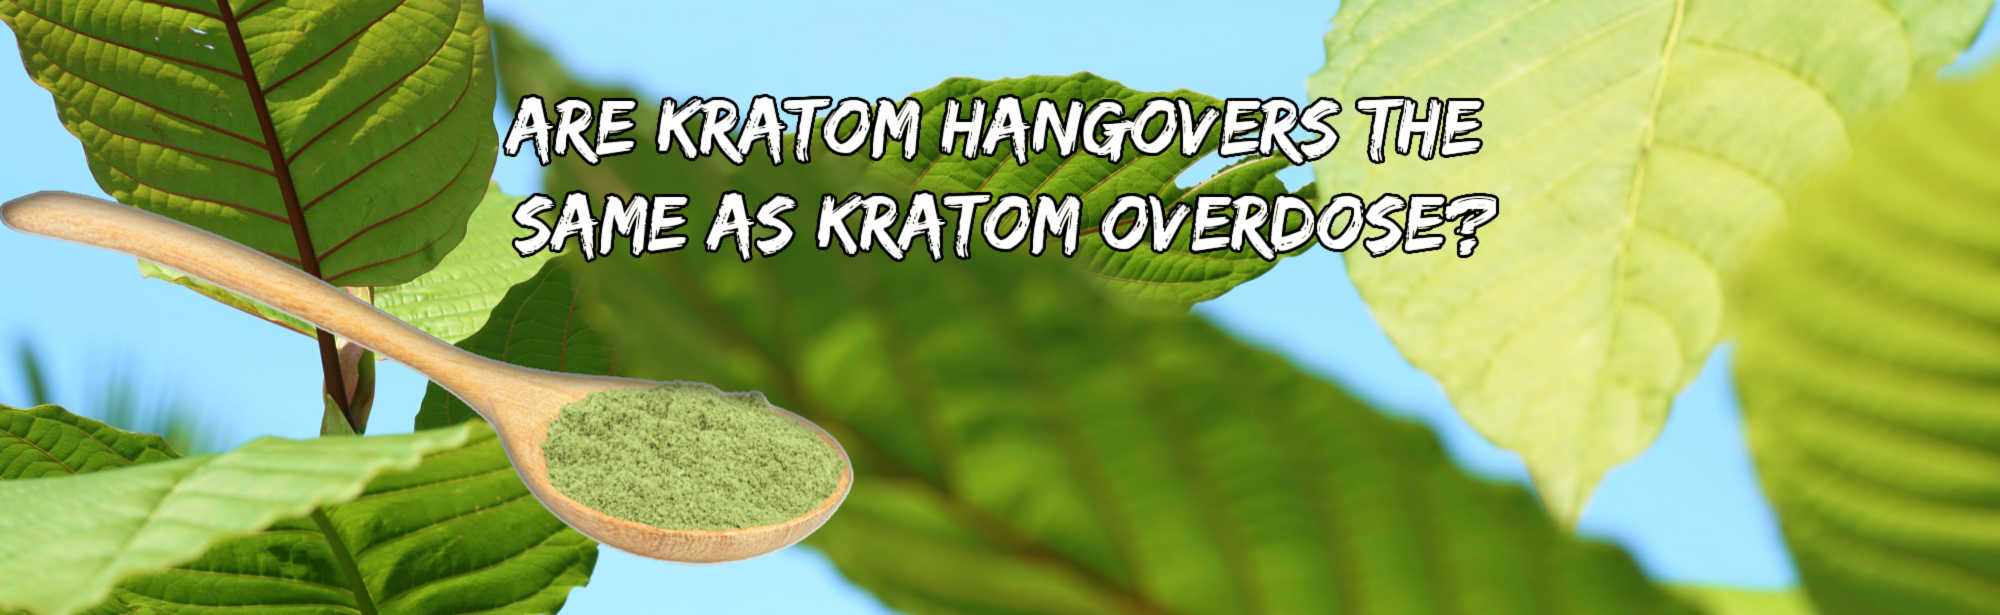 image of are kratom hangovers and overdose same